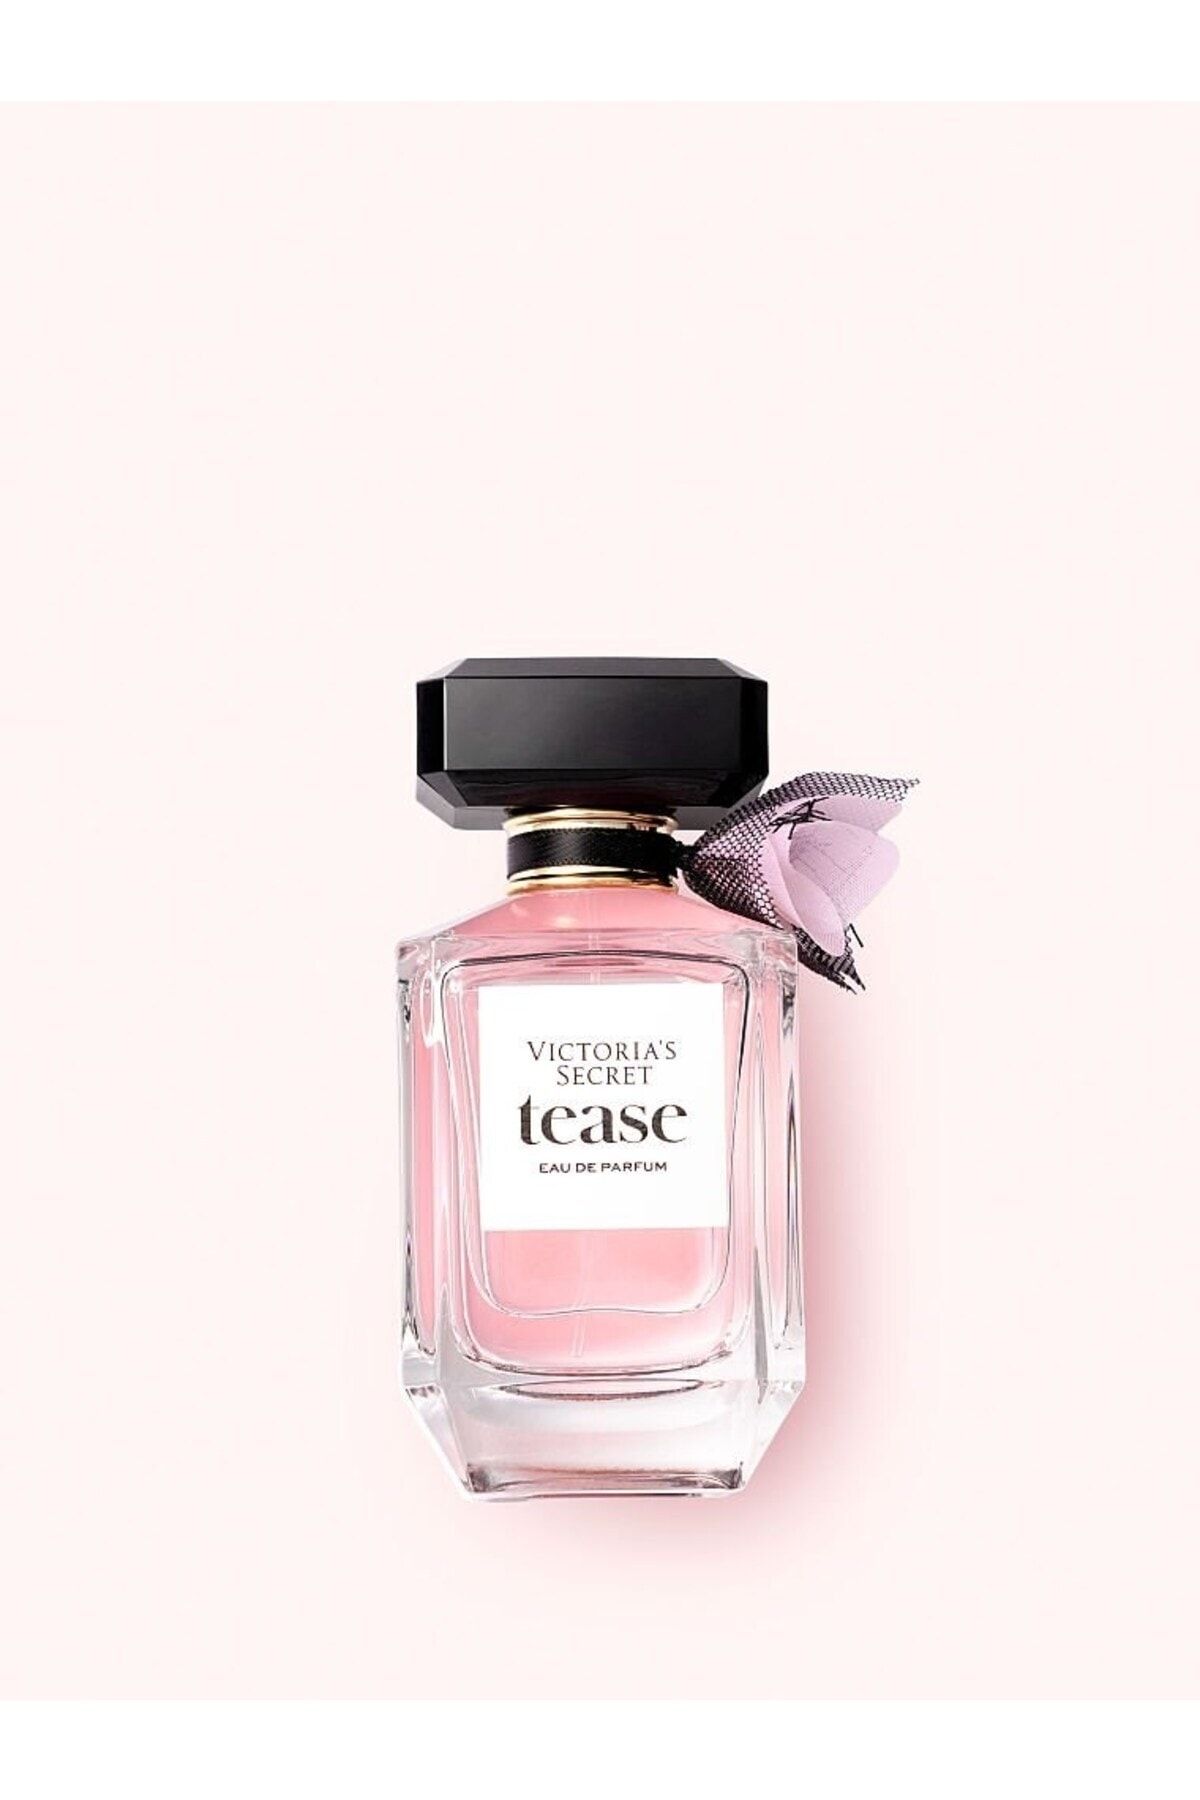 Victoria's Secret Tease Eau De Parfum 100 ml